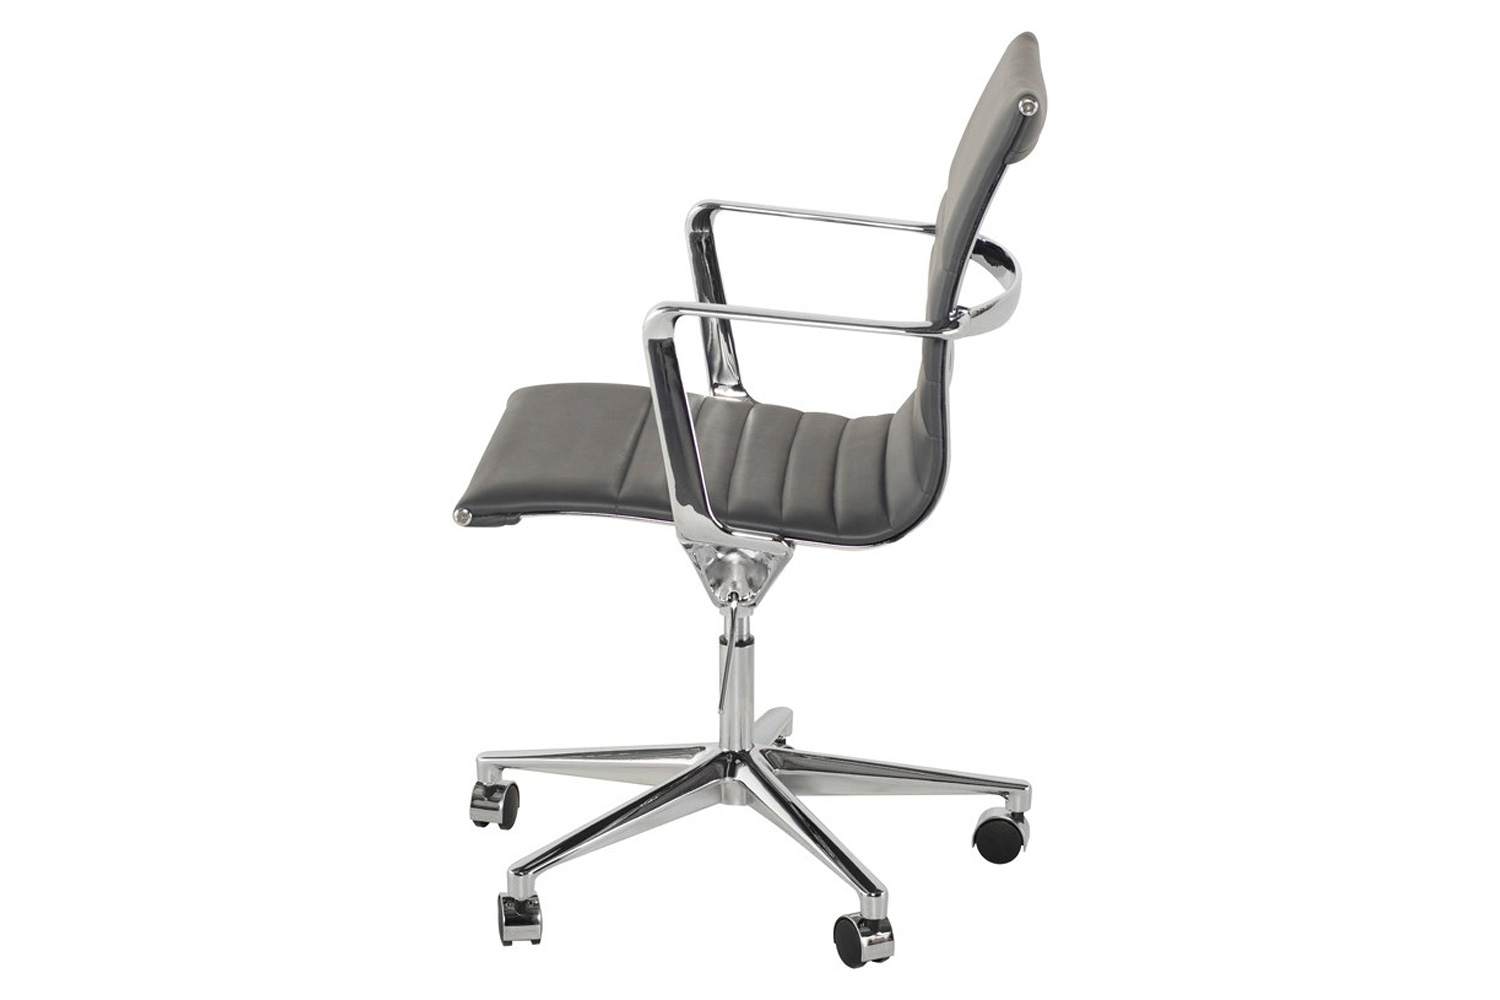 Nuevo™ Antonio Office Chair - Gray Naugahyde Seat
